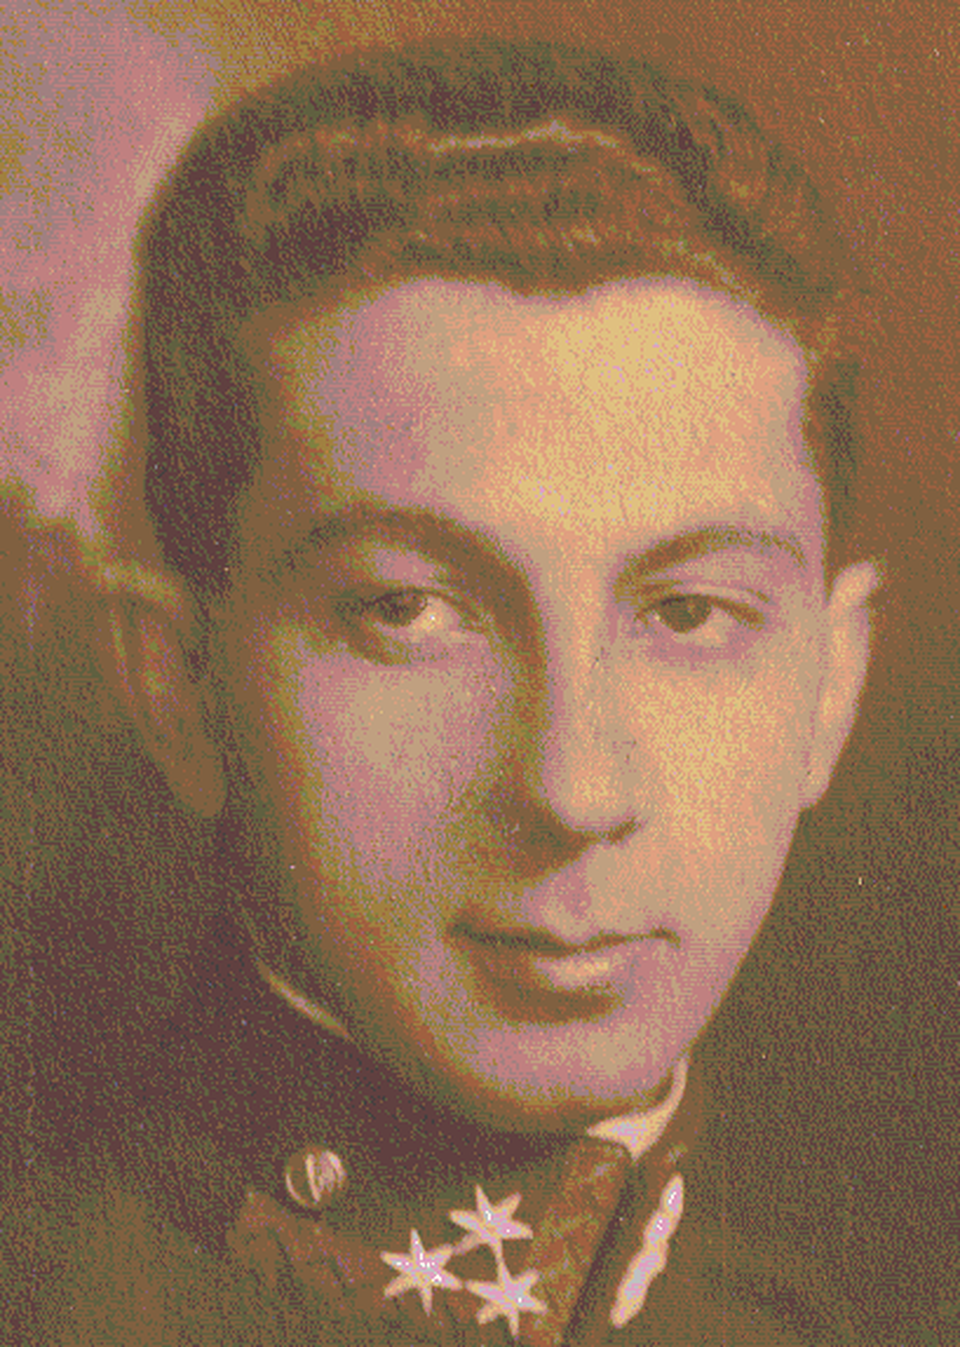 Domány Ferenc 1930 körül (Forrás: Domány András)